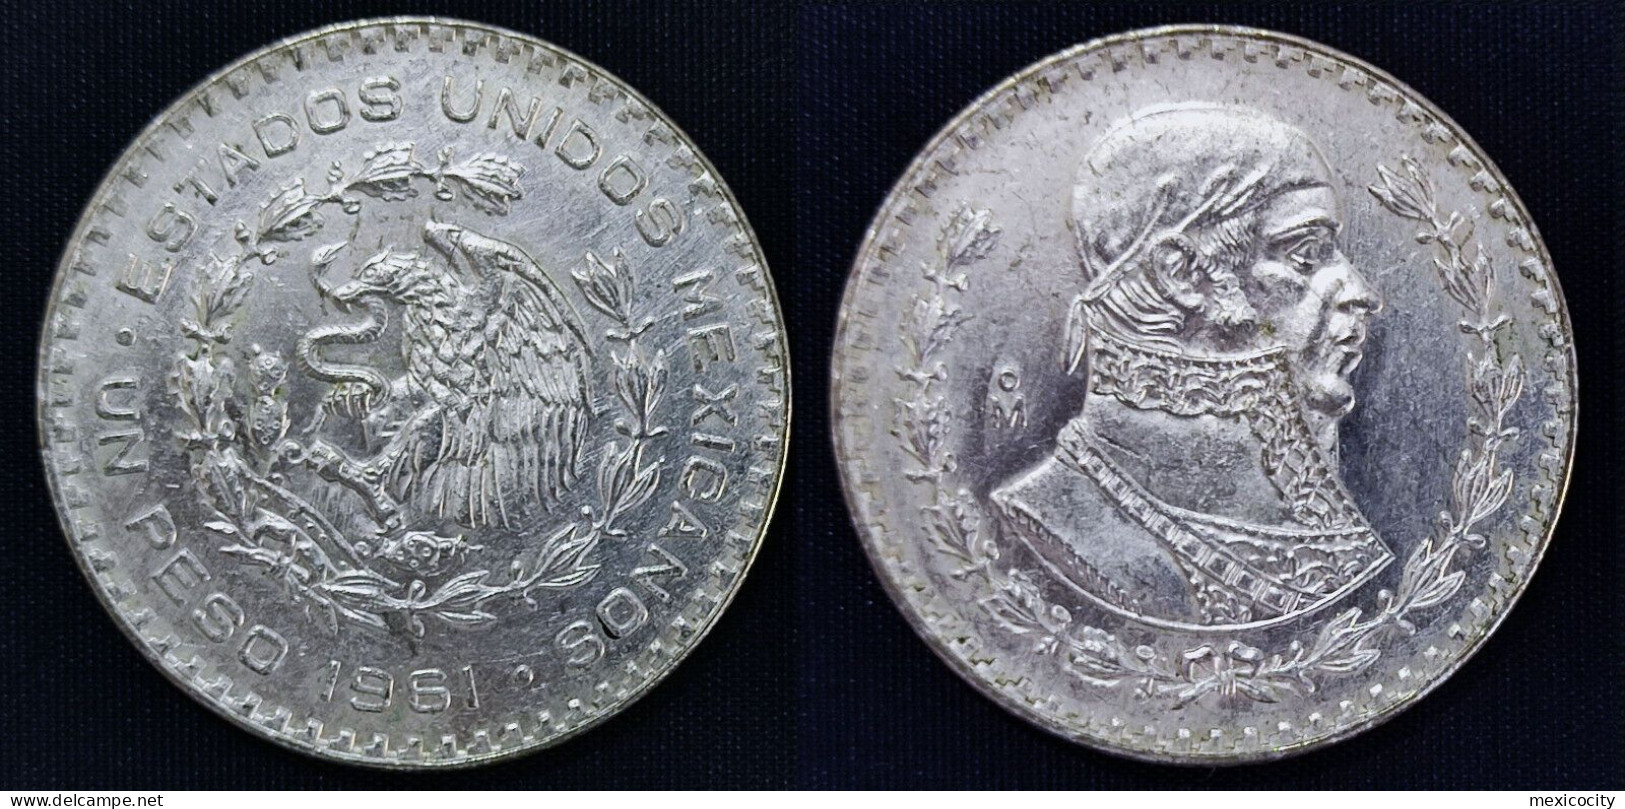 MEXICO 1961 $1 MORELOS 10 % Silver Peso, See Imgs., AU/BU Orig. Shine, Scarce Thus - Mexico